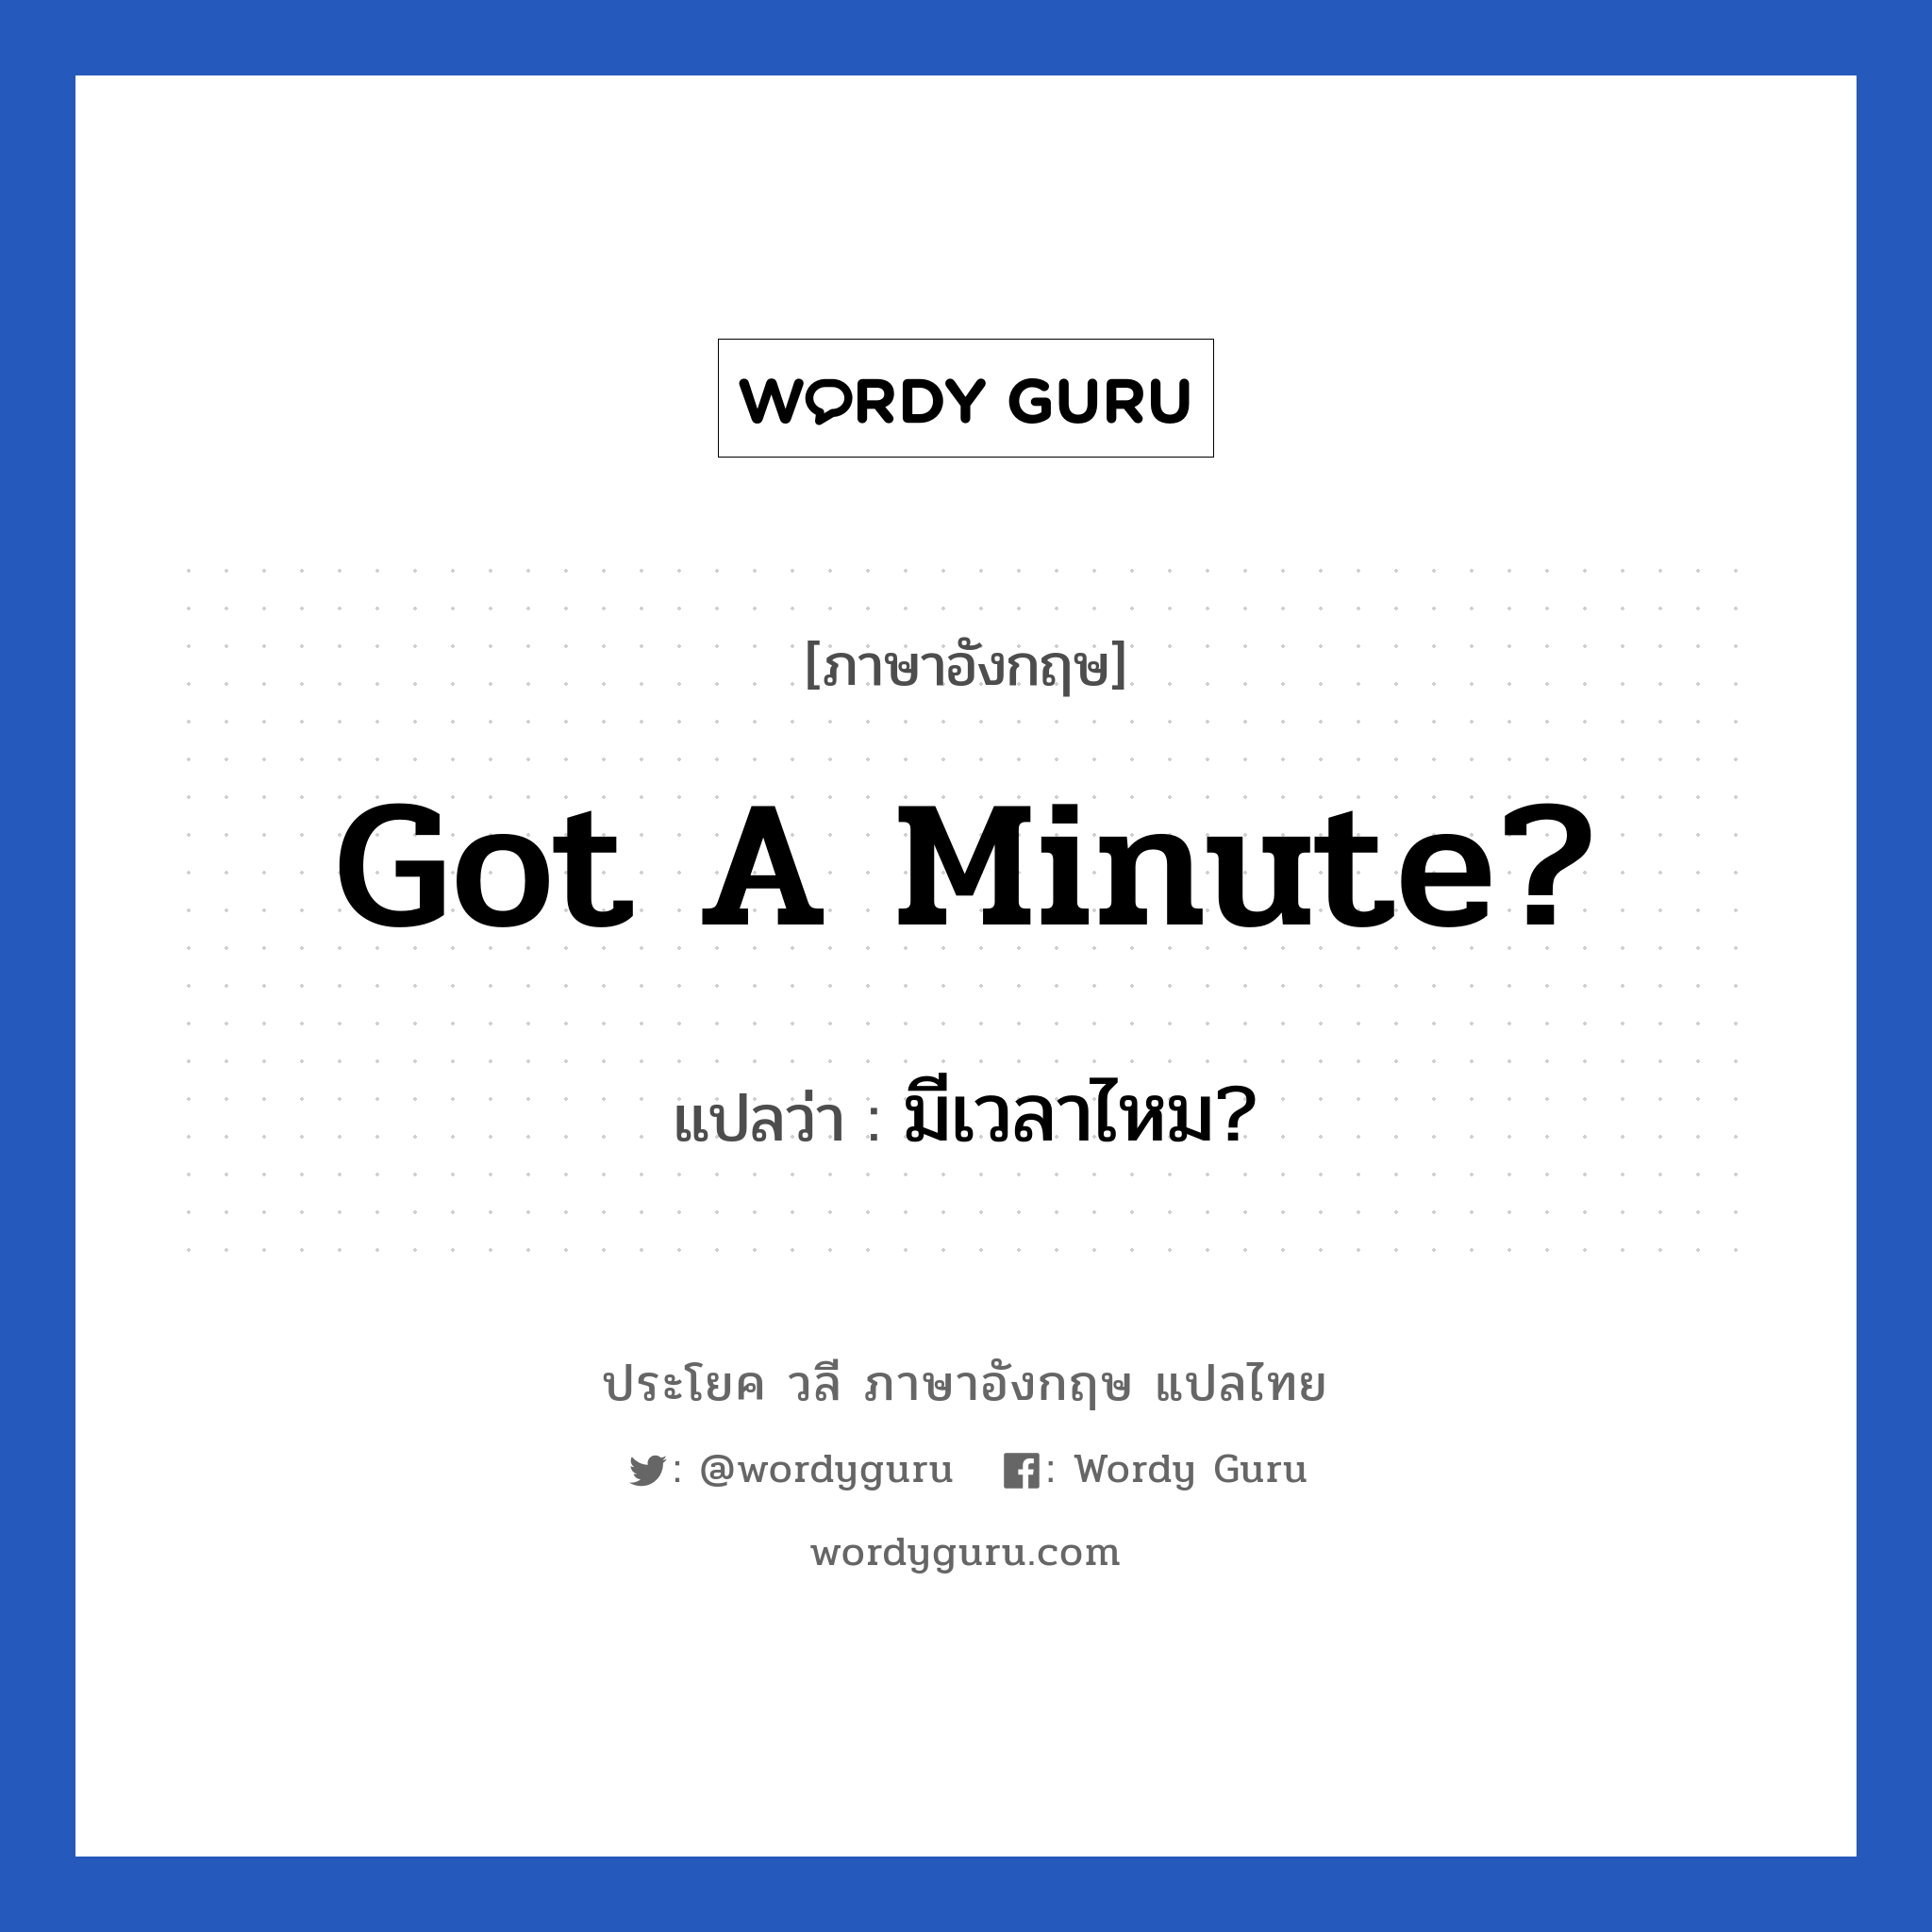 Got a minute? แปลว่า?, วลีภาษาอังกฤษ Got a minute? แปลว่า มีเวลาไหม?